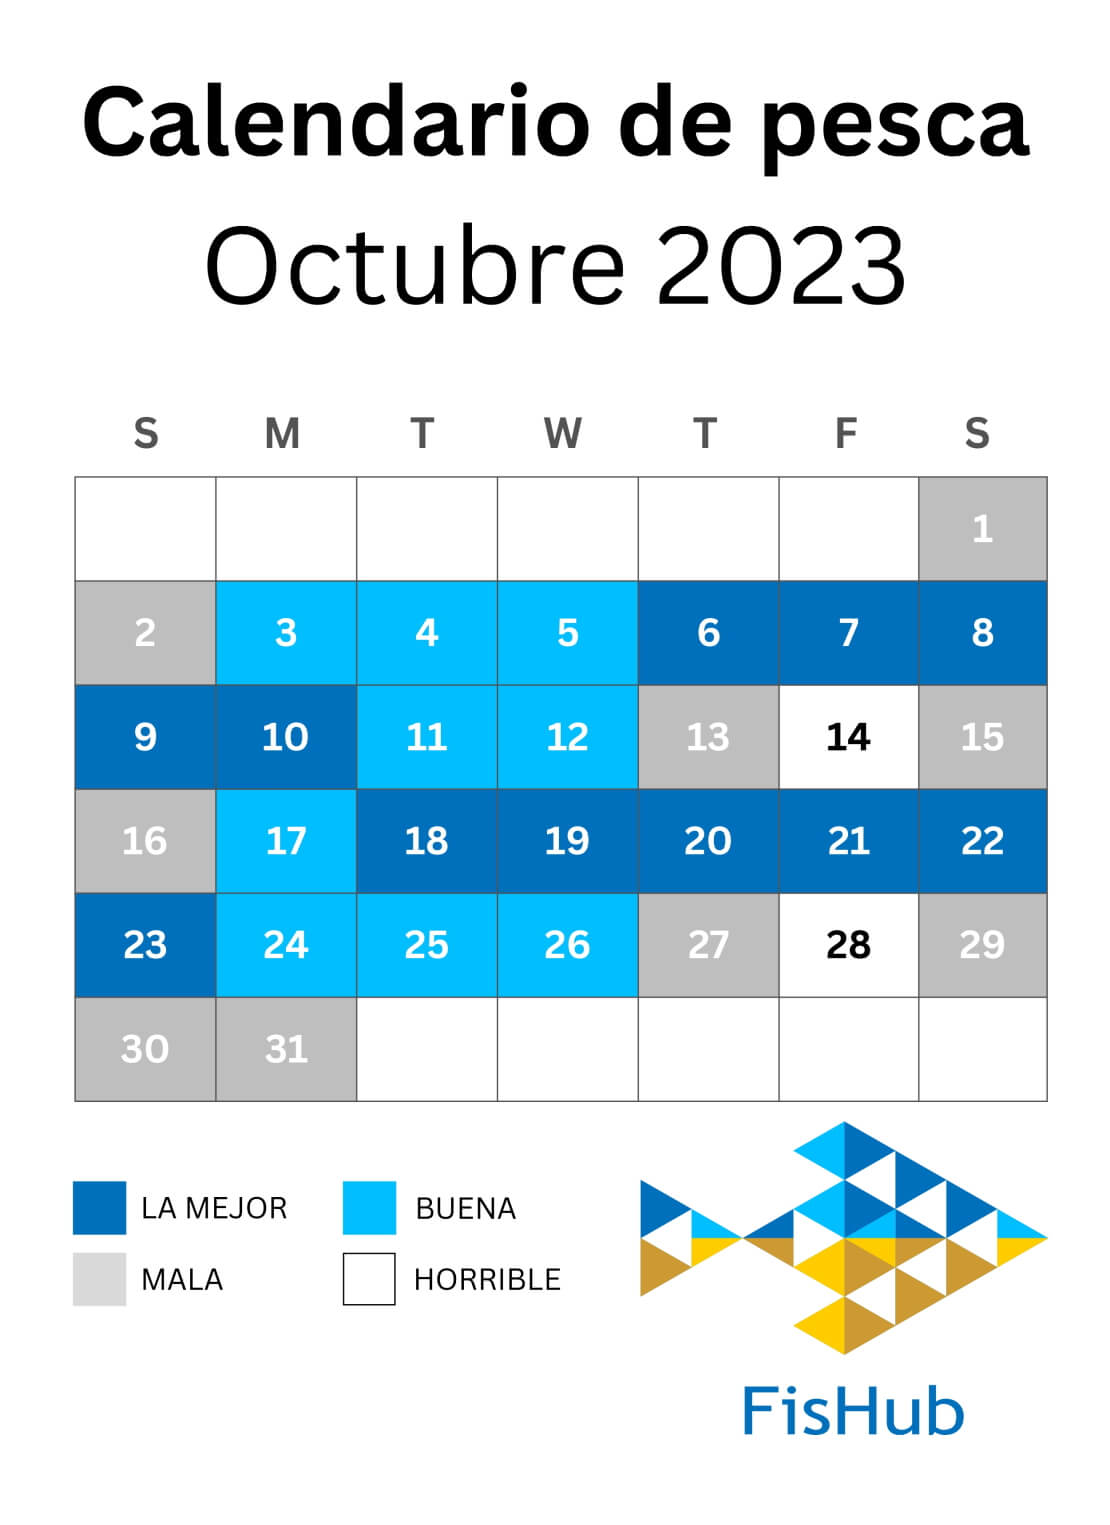 Calendario del pescador para octubre de 2023